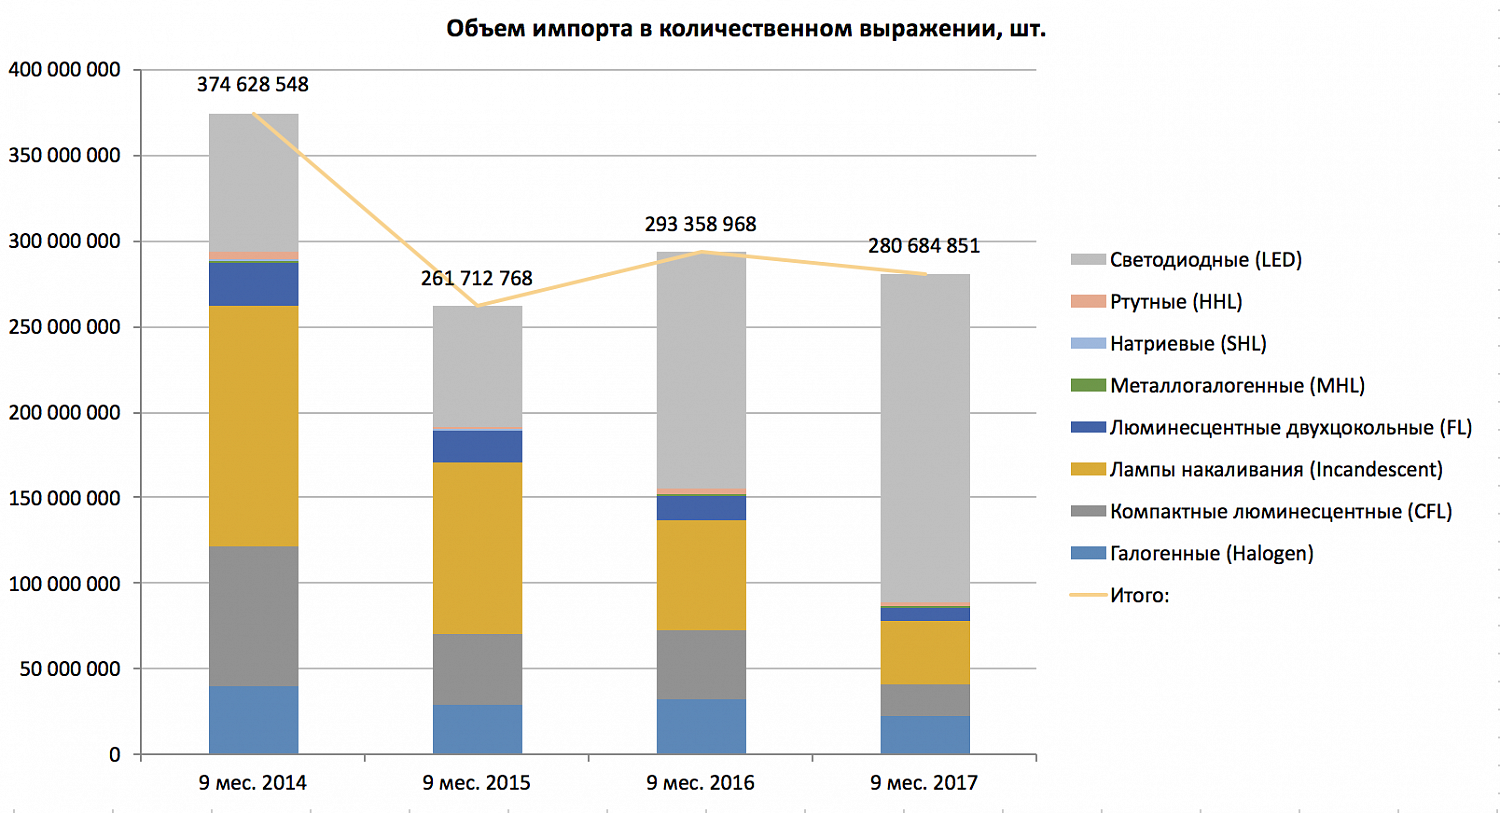 Импорт ламп в РФ за 1-3 кв. 2017 г.